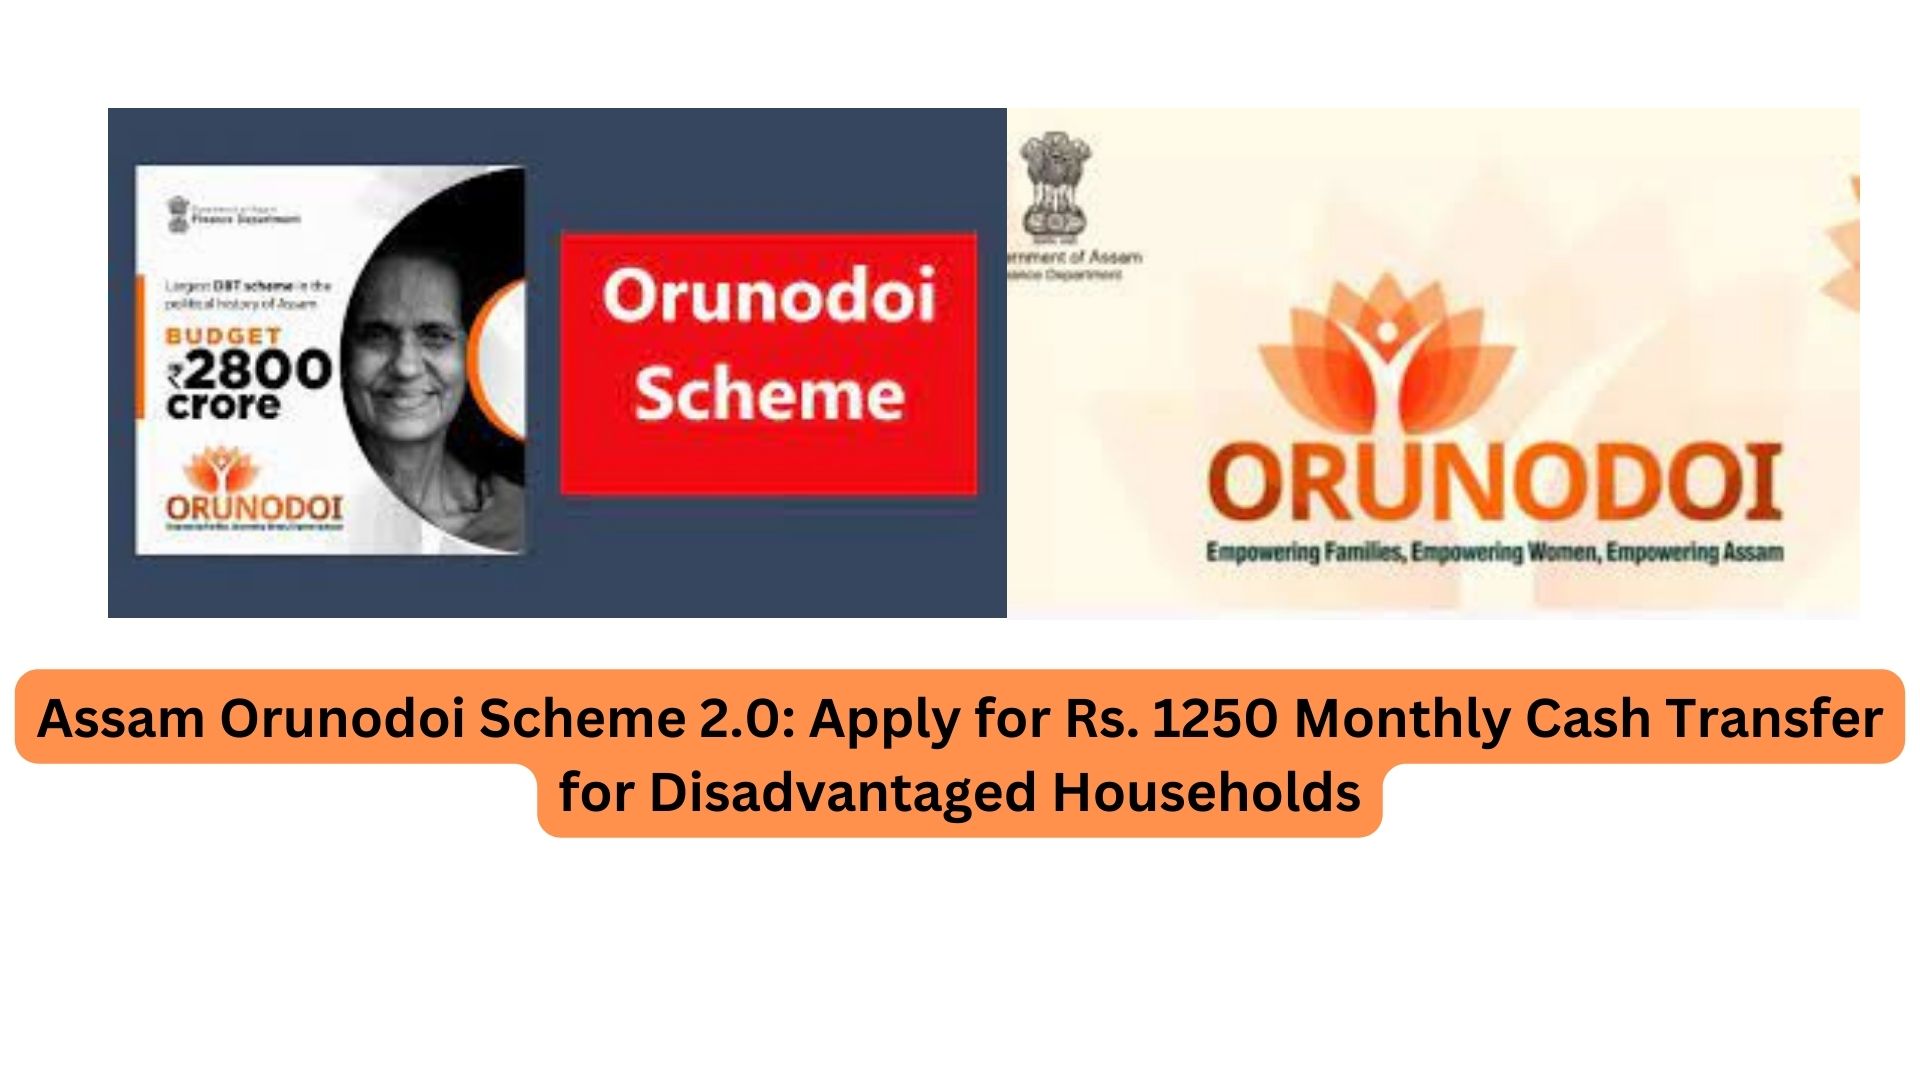 Assam Orunodoi Scheme 2.0: Apply for Rs. 1250 Monthly Cash Transfer for Disadvantaged Households